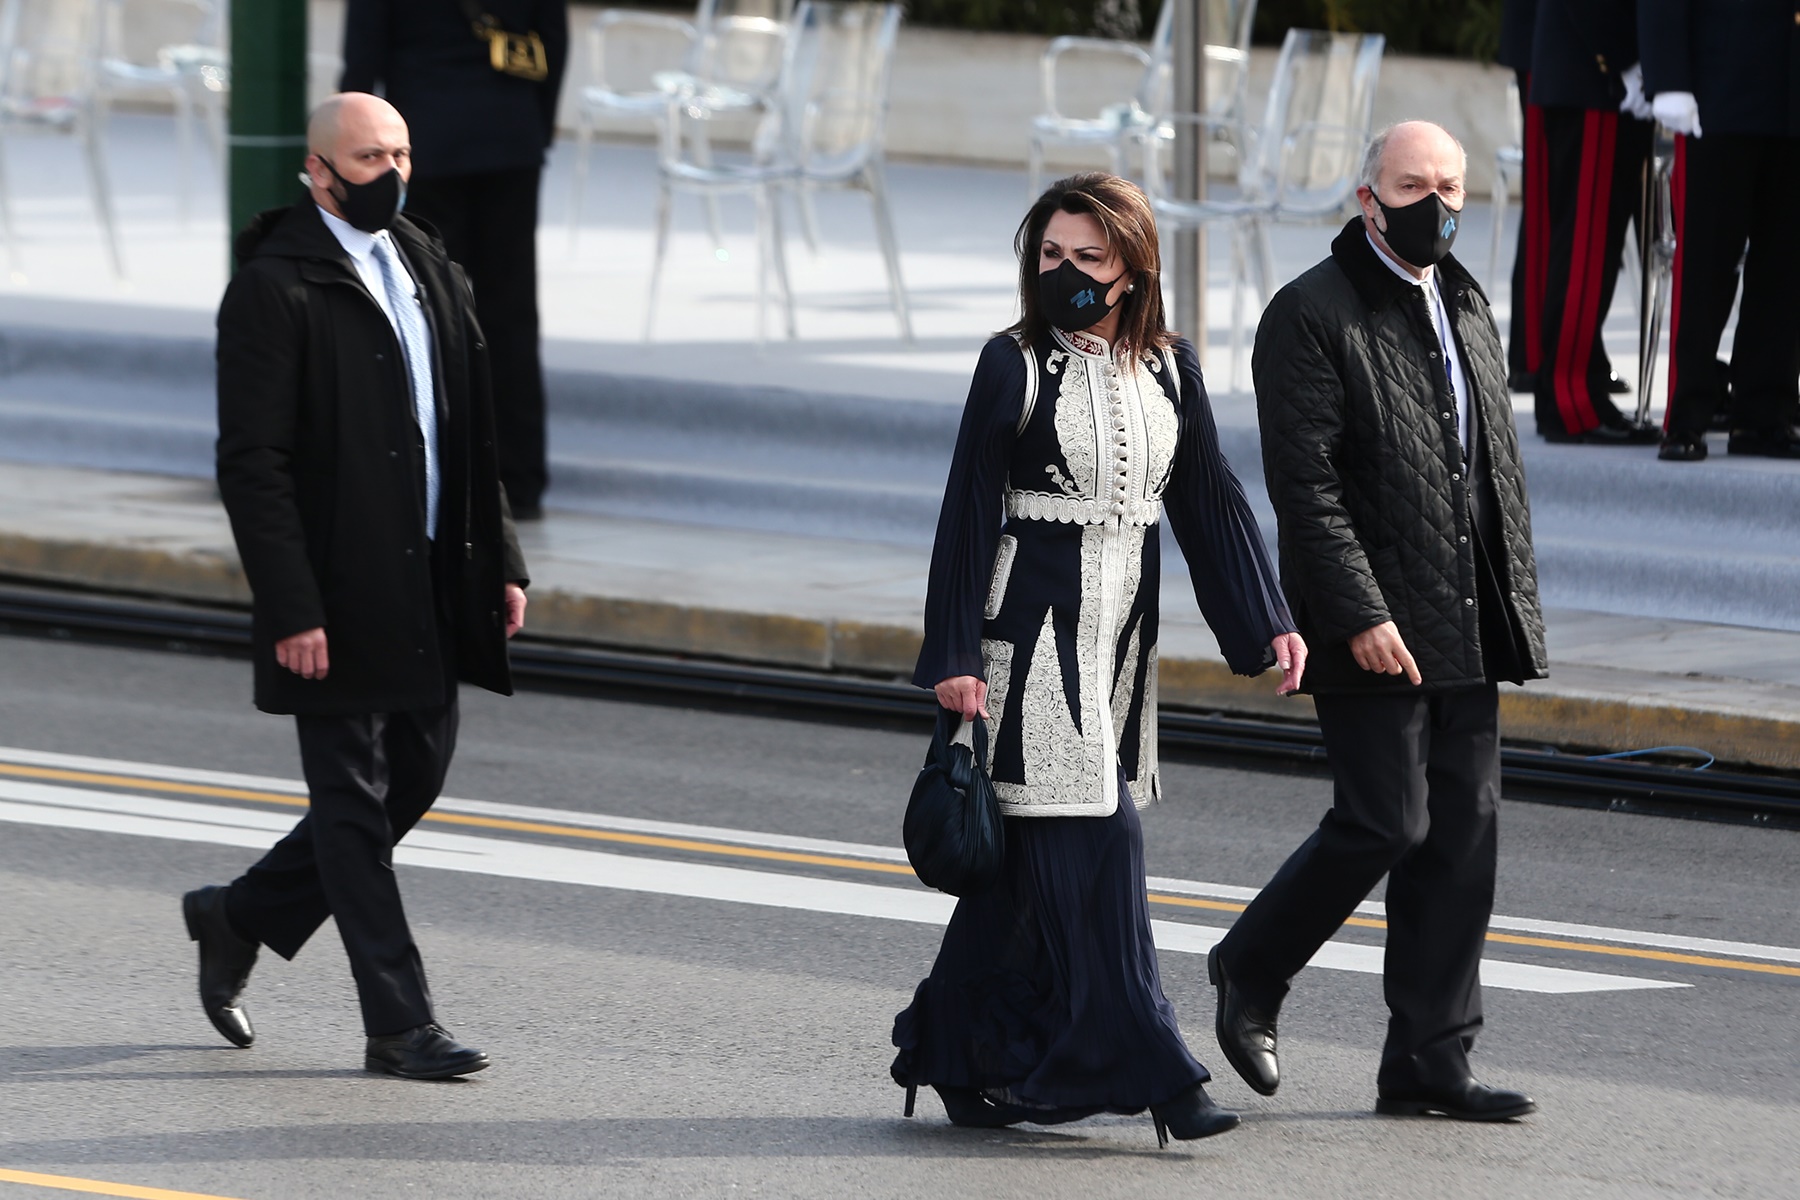 Γιάννα Αγγελοπούλου ντύσιμο: Ο Νίκος Αλιάγας αποκάλυψε τον άνθρωπο πίσω από τον ντουλαμά